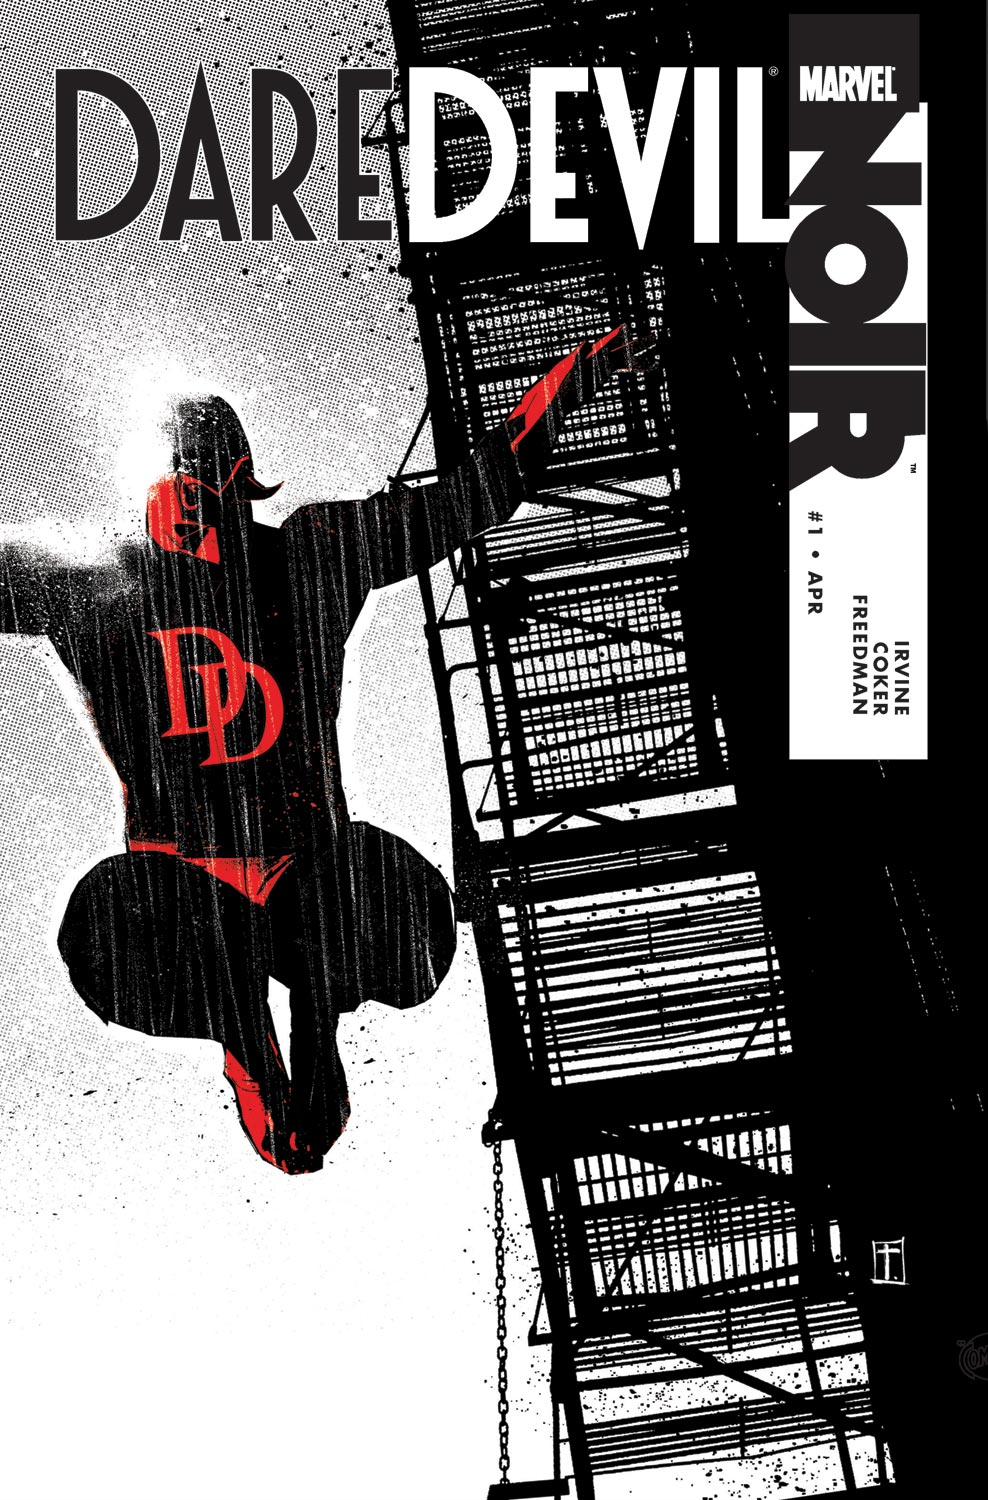 Daredevil Noir (2009) #1